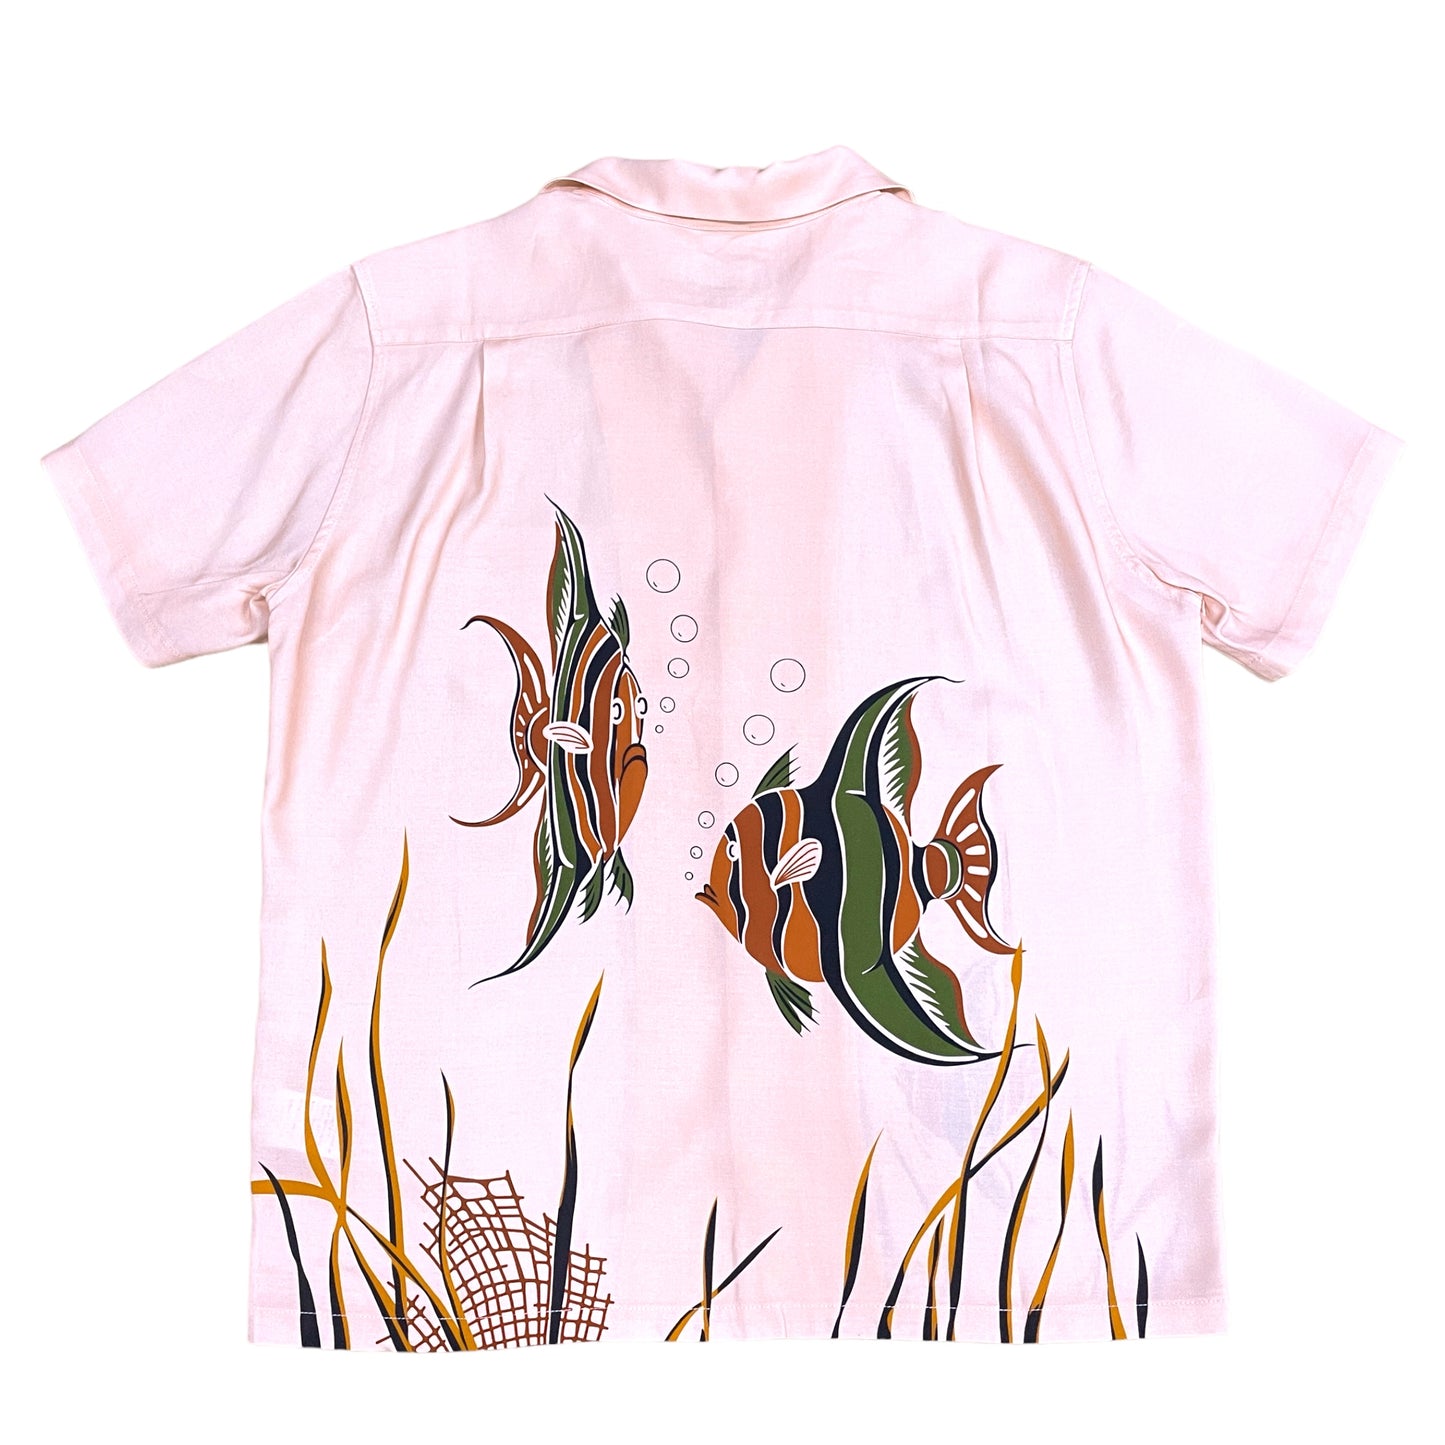 Short Sleeve Rayon Print Shirt 「Tropical fish・Pink」/半袖レーヨンプリントシャツ「トロピカルフィッシュ・ピンク」